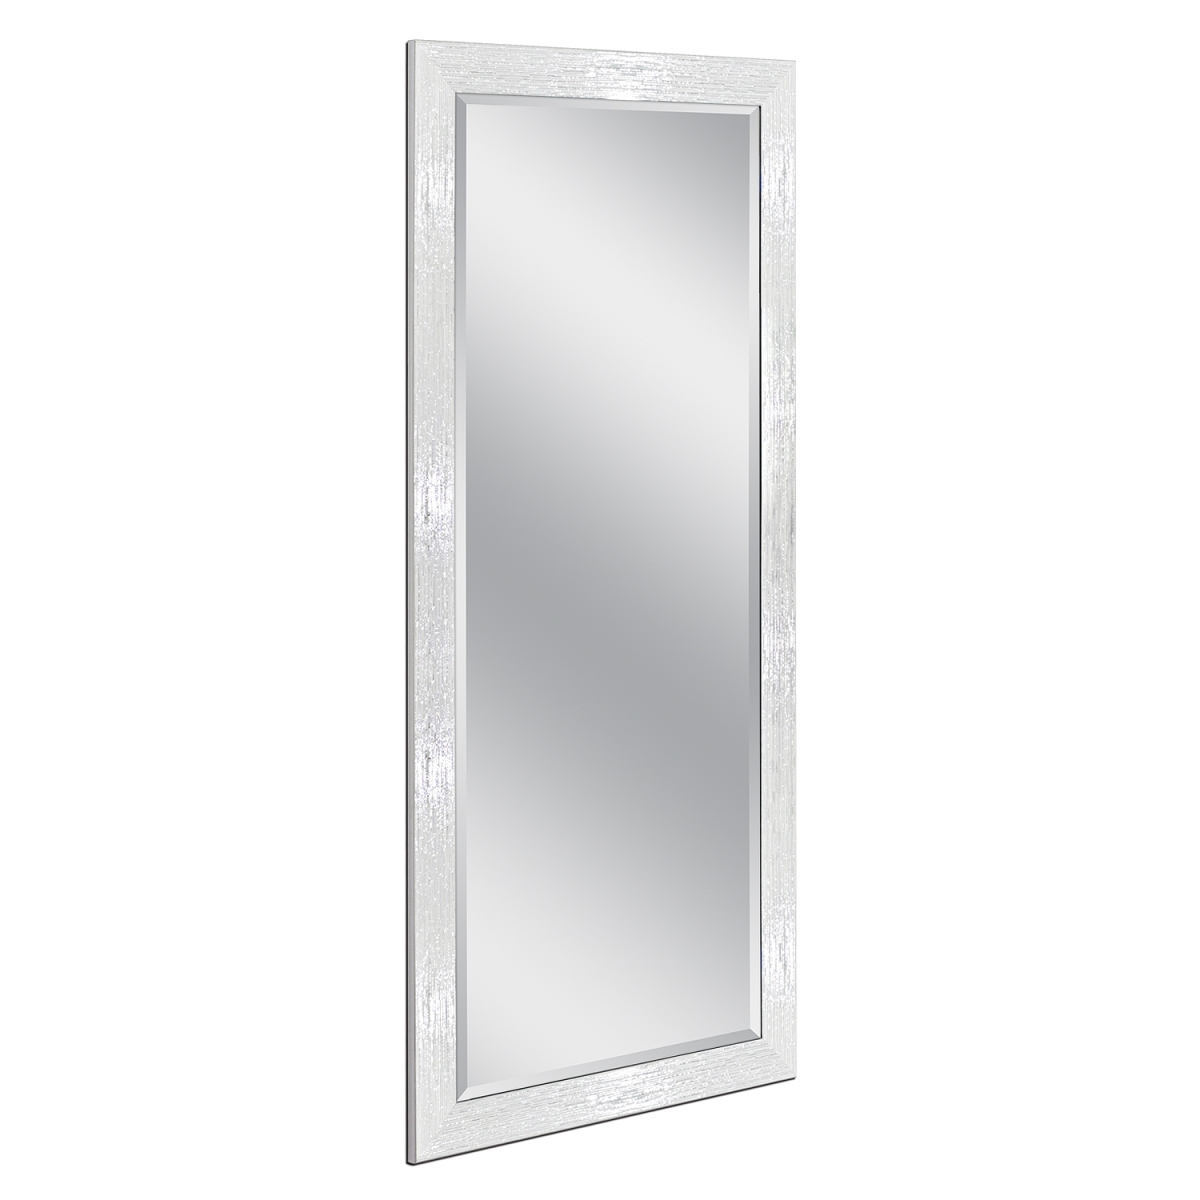 8163 29.5 X 63.5 In. Polystyrene Frame Leaner Mirror - White & Chrome Driftwood